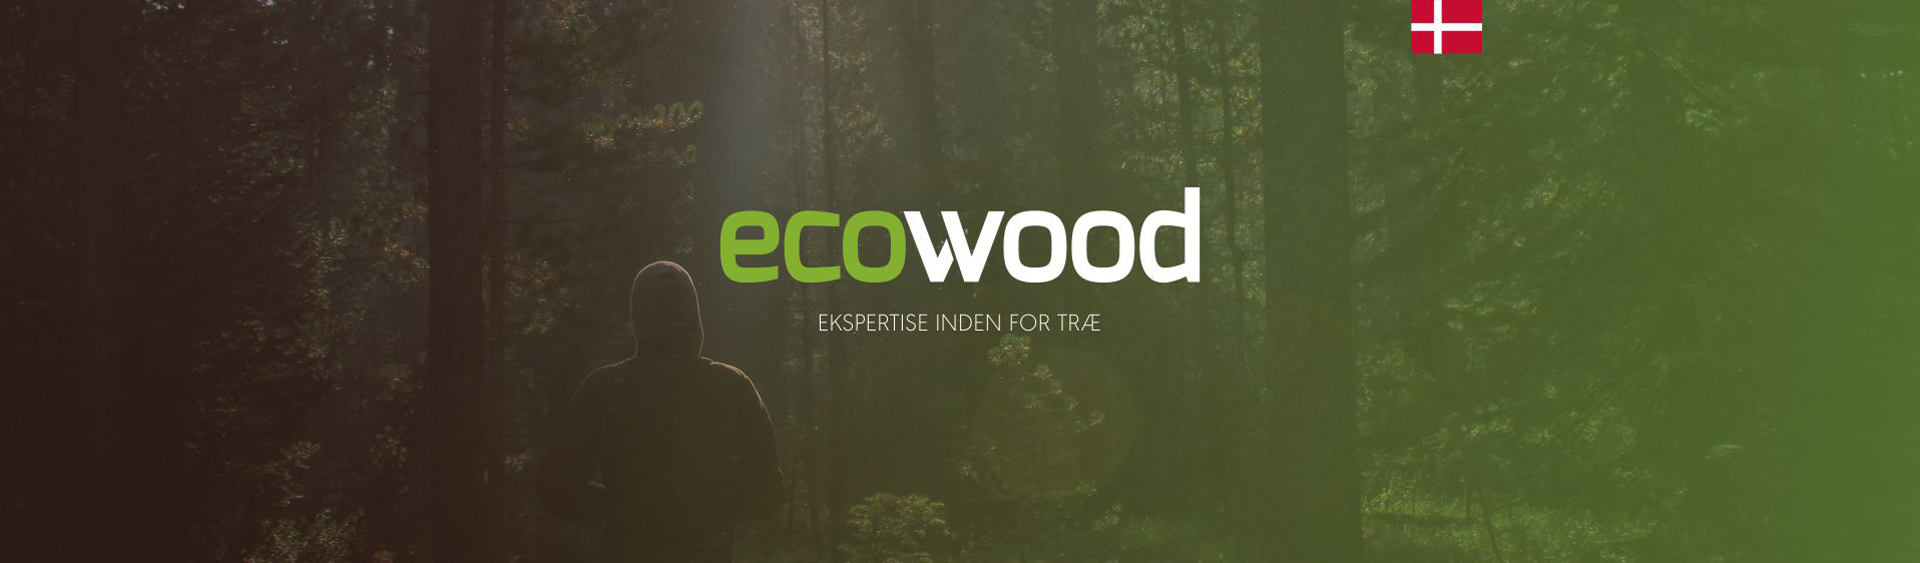 Ecowood - Realizacja - Agencja ROXART